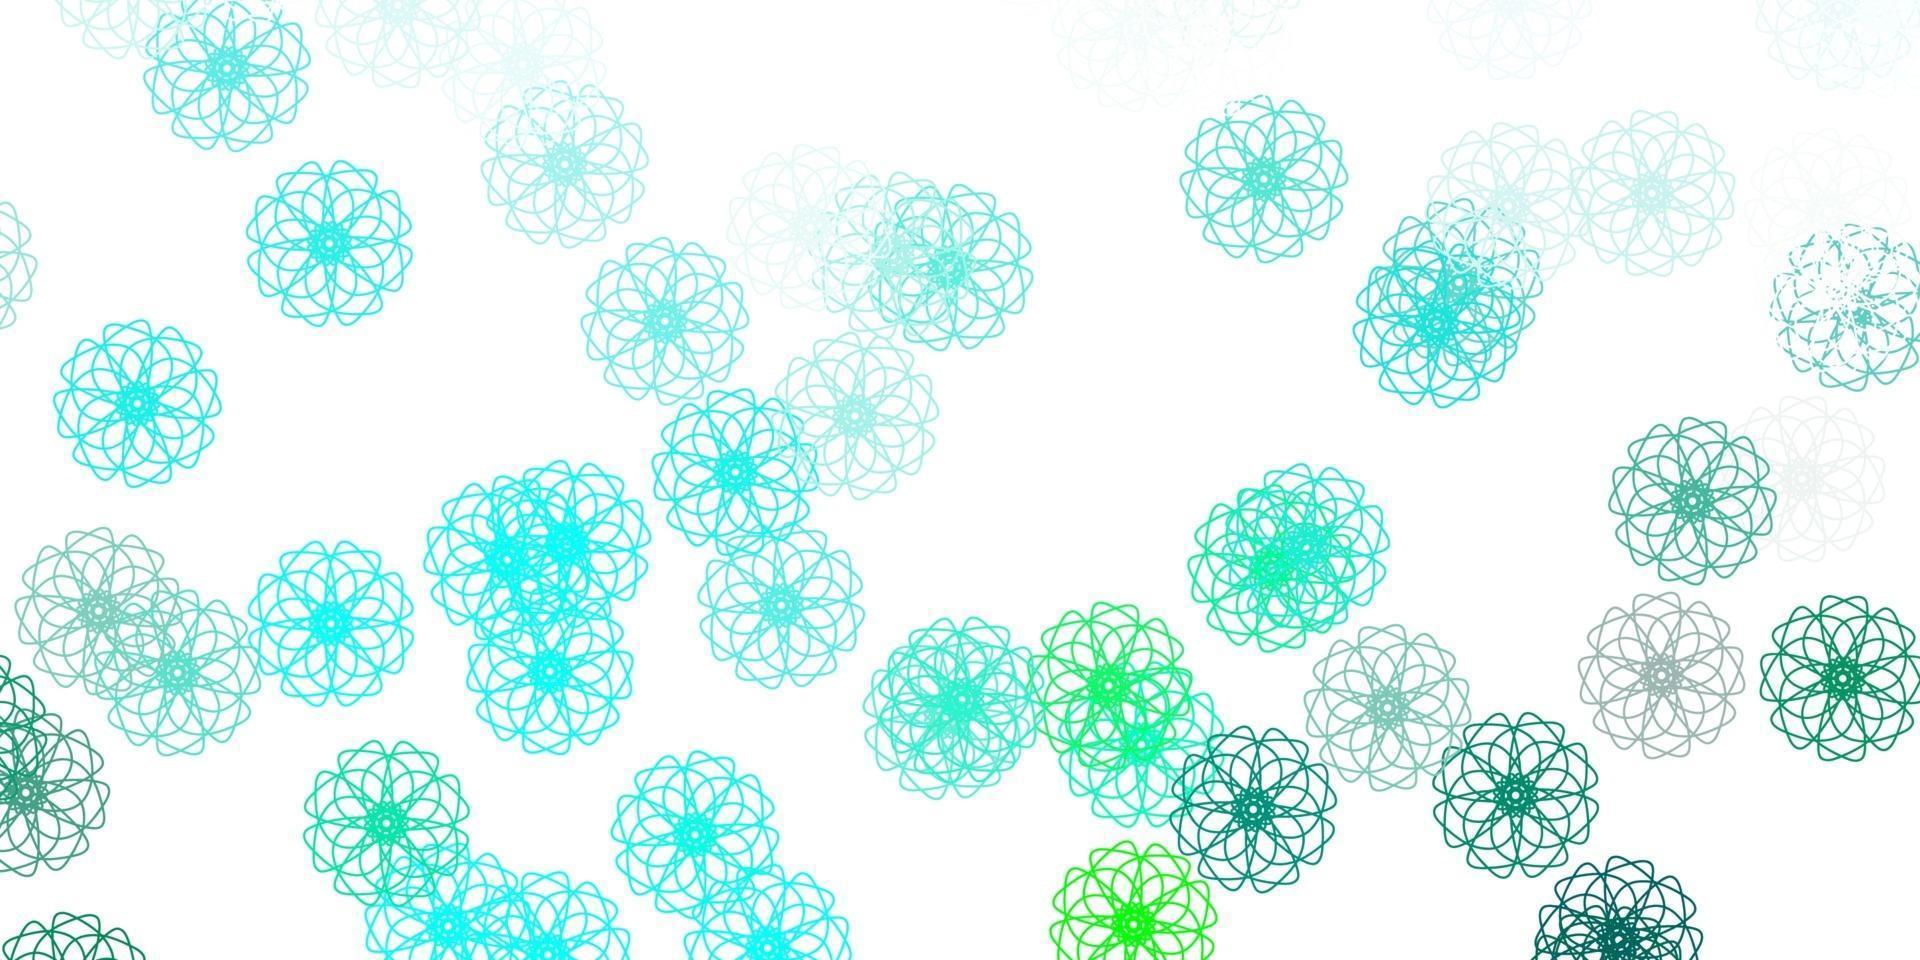 lichtgroen vector doodle sjabloon met bloemen.